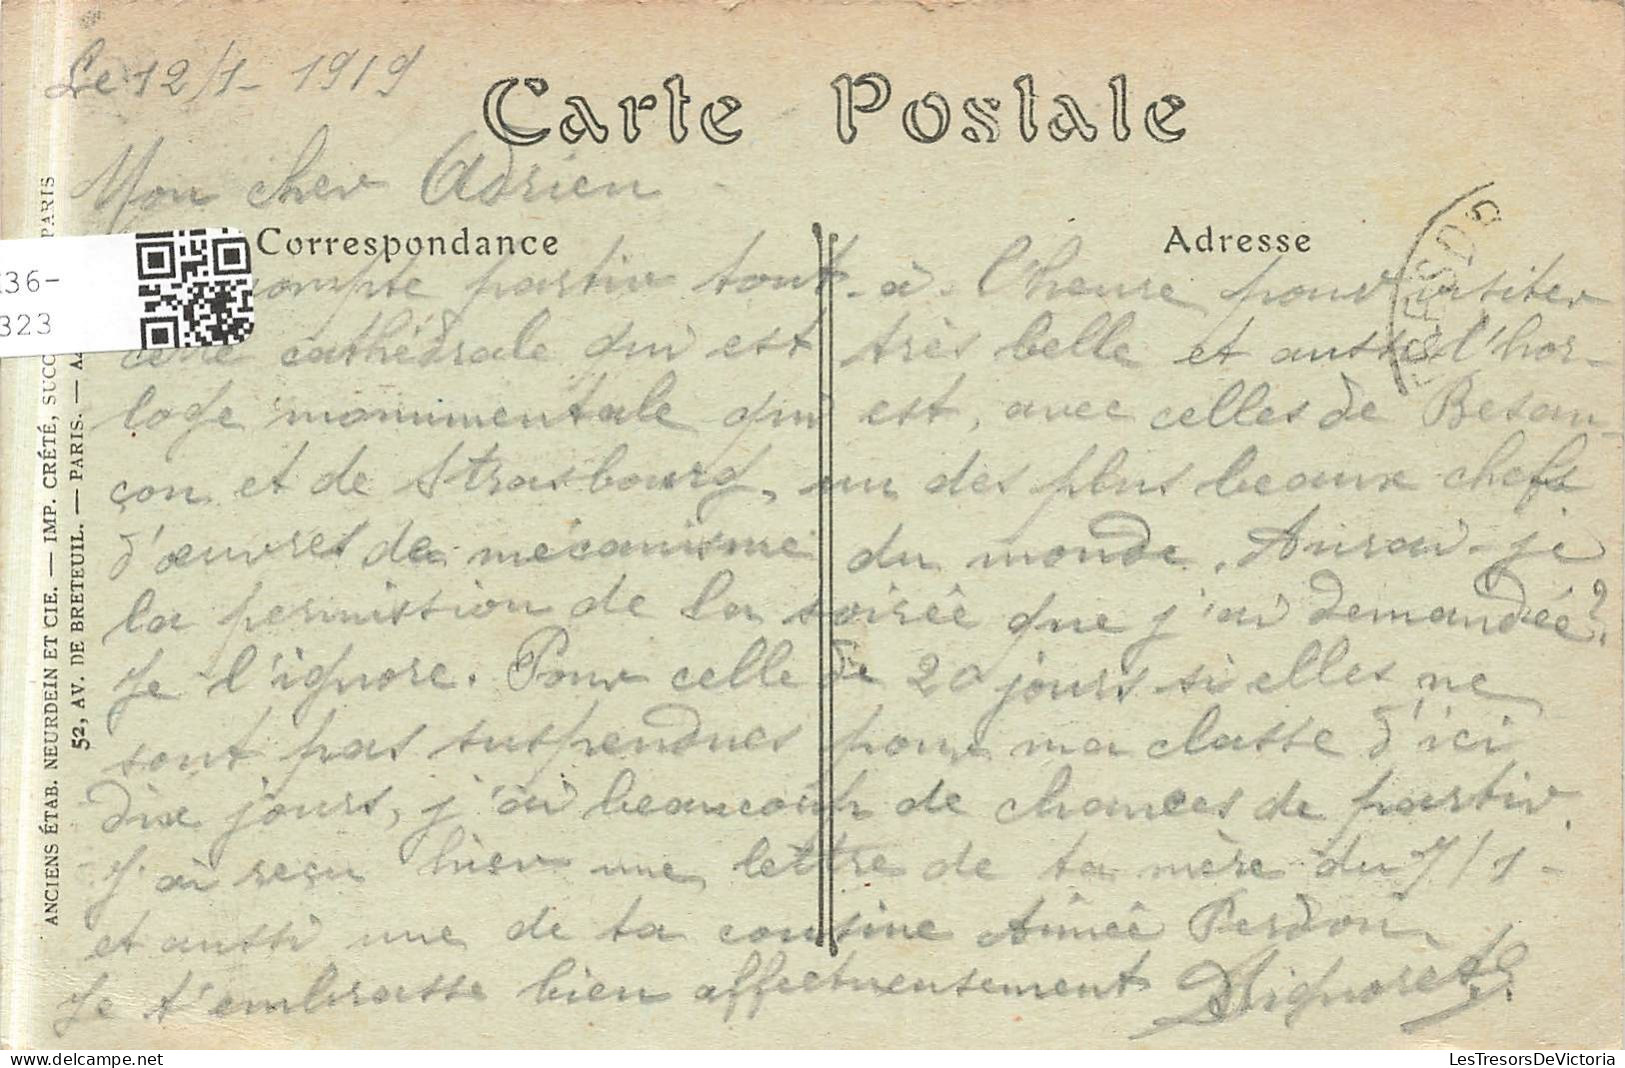 FRANCE - Beauvais - Cathédrale - Le Grand Portail - Carte Postale Ancienne - Beauvais